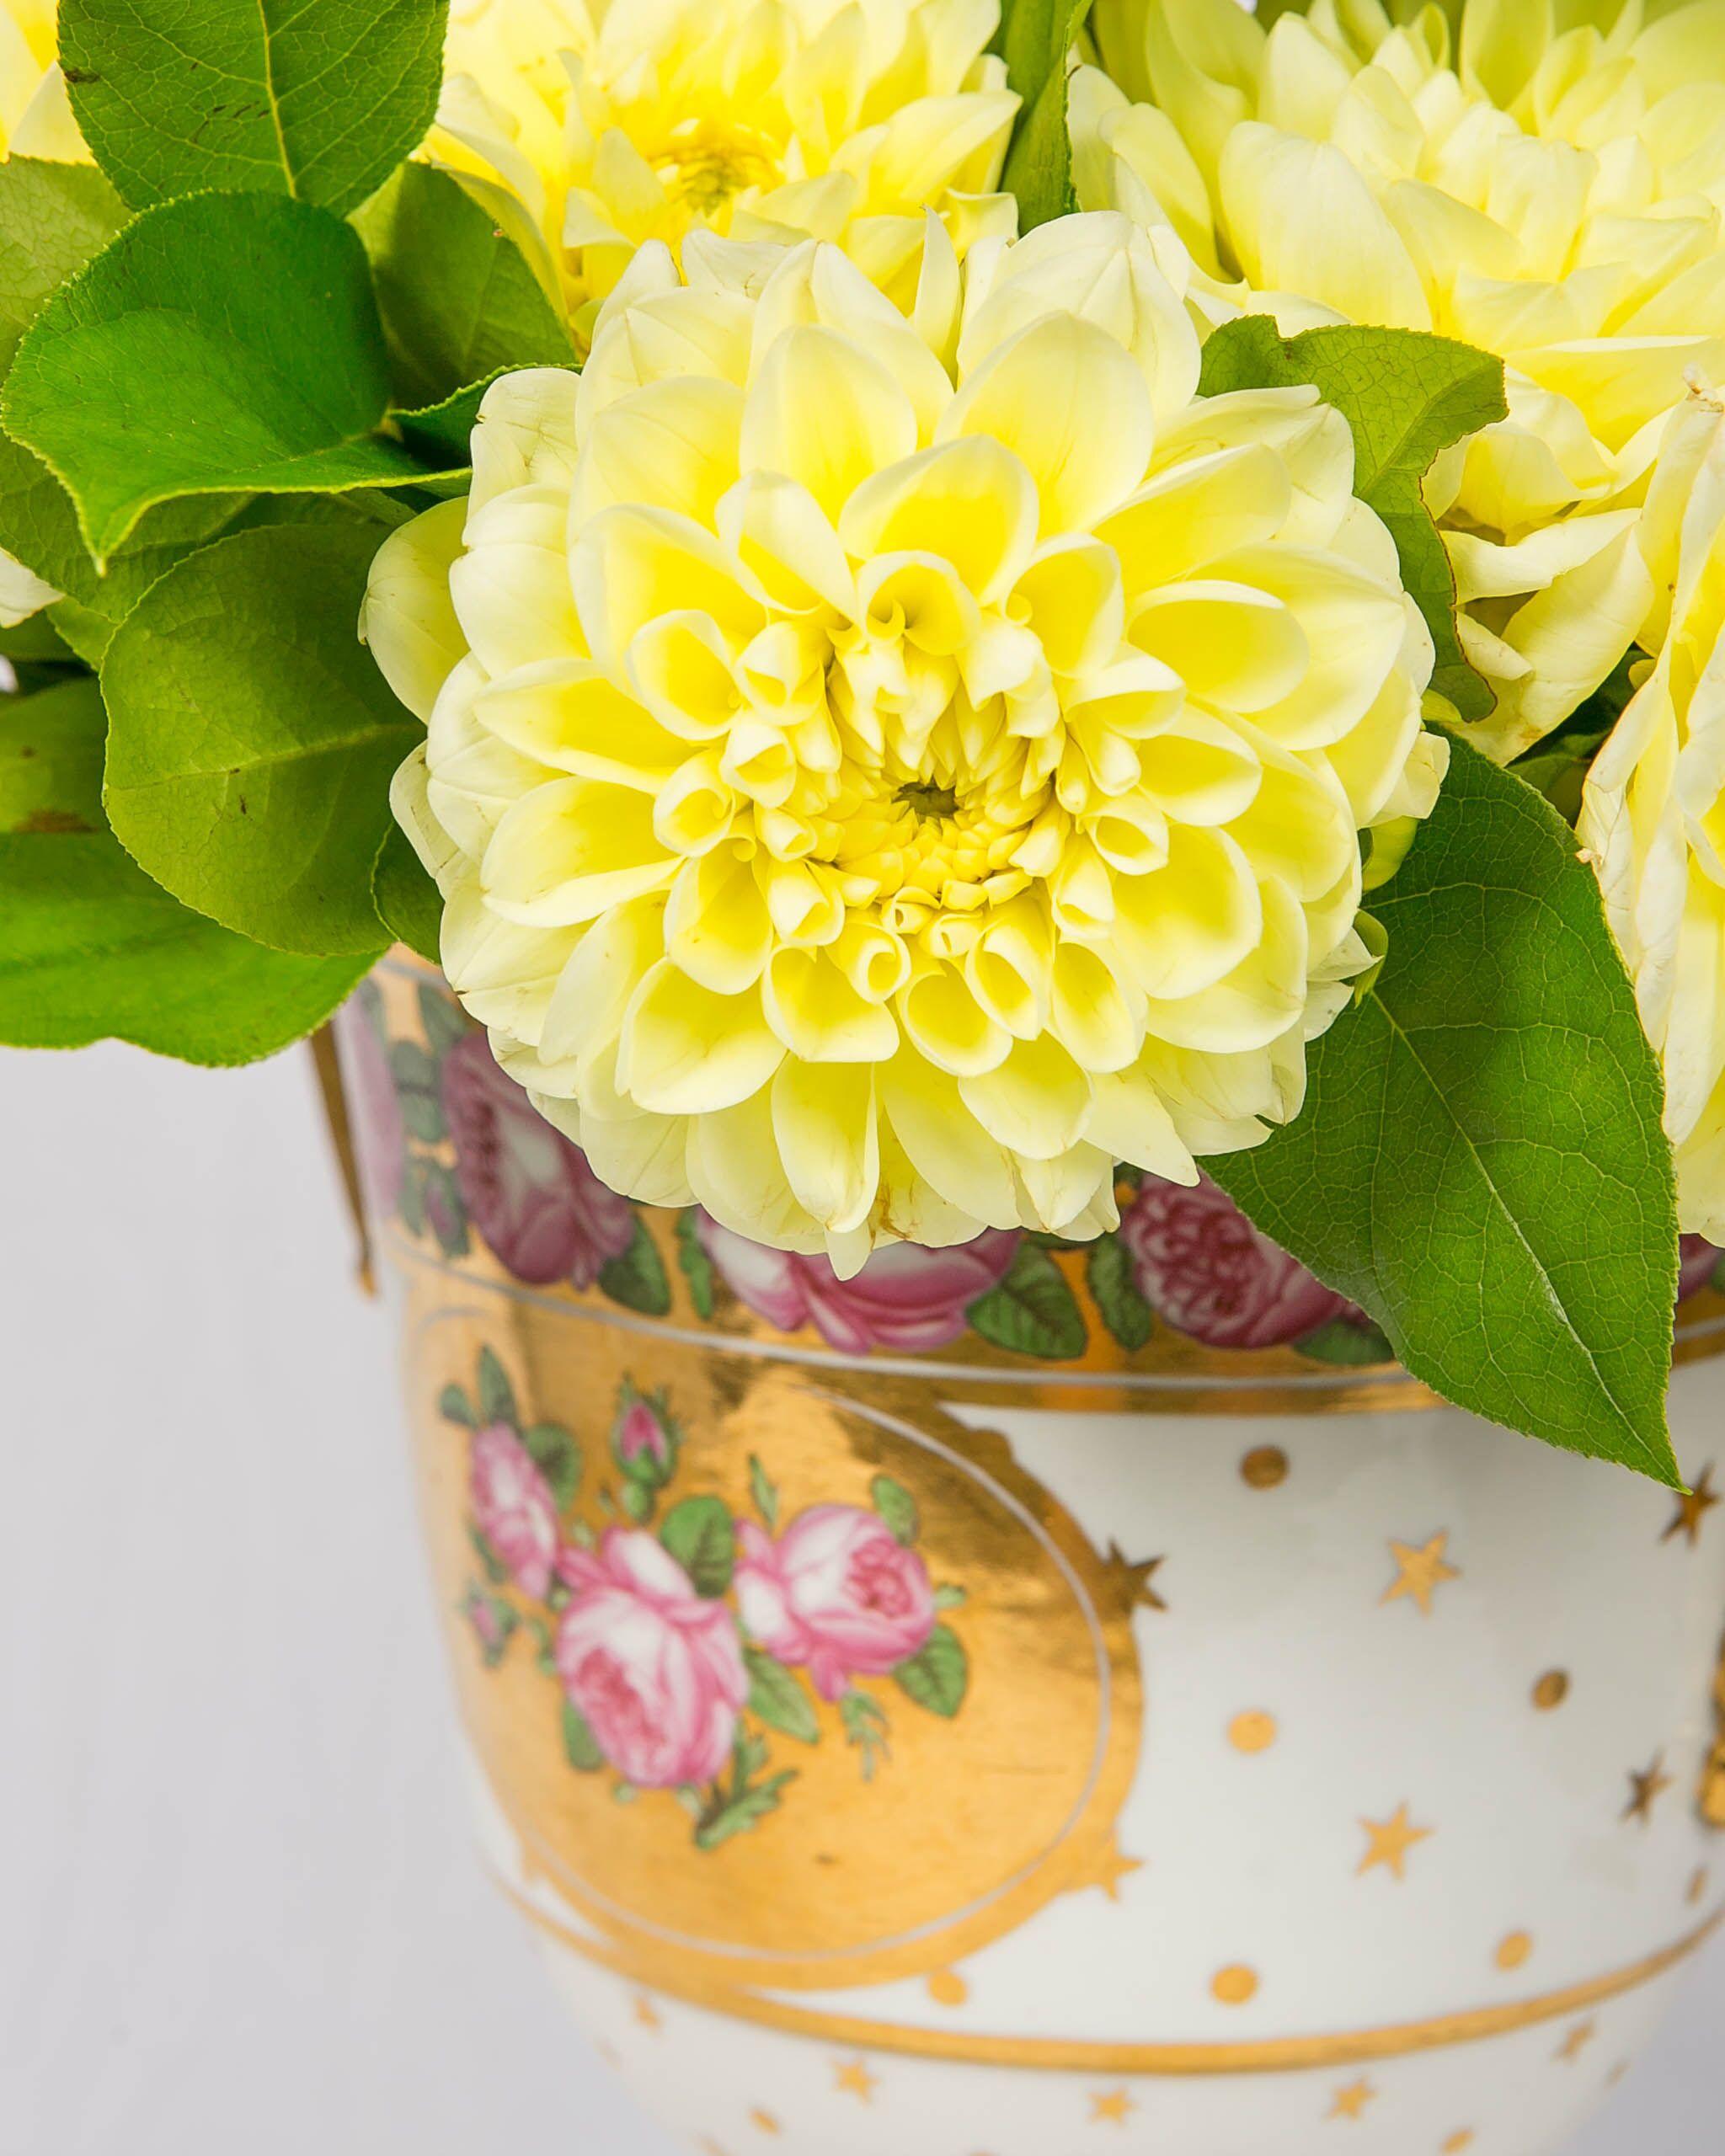  Dieses Paar ist eine hervorragende Vase aus der Regency-Zeit!
Die Vasen fungieren als Eiskübel mit Innenbehälter für Eis oder, wenn Sie möchten, für Blumen.
Sie wurden von Spode um 1810 hergestellt, sind groß, reich vergoldet und mit leuchtend rosa